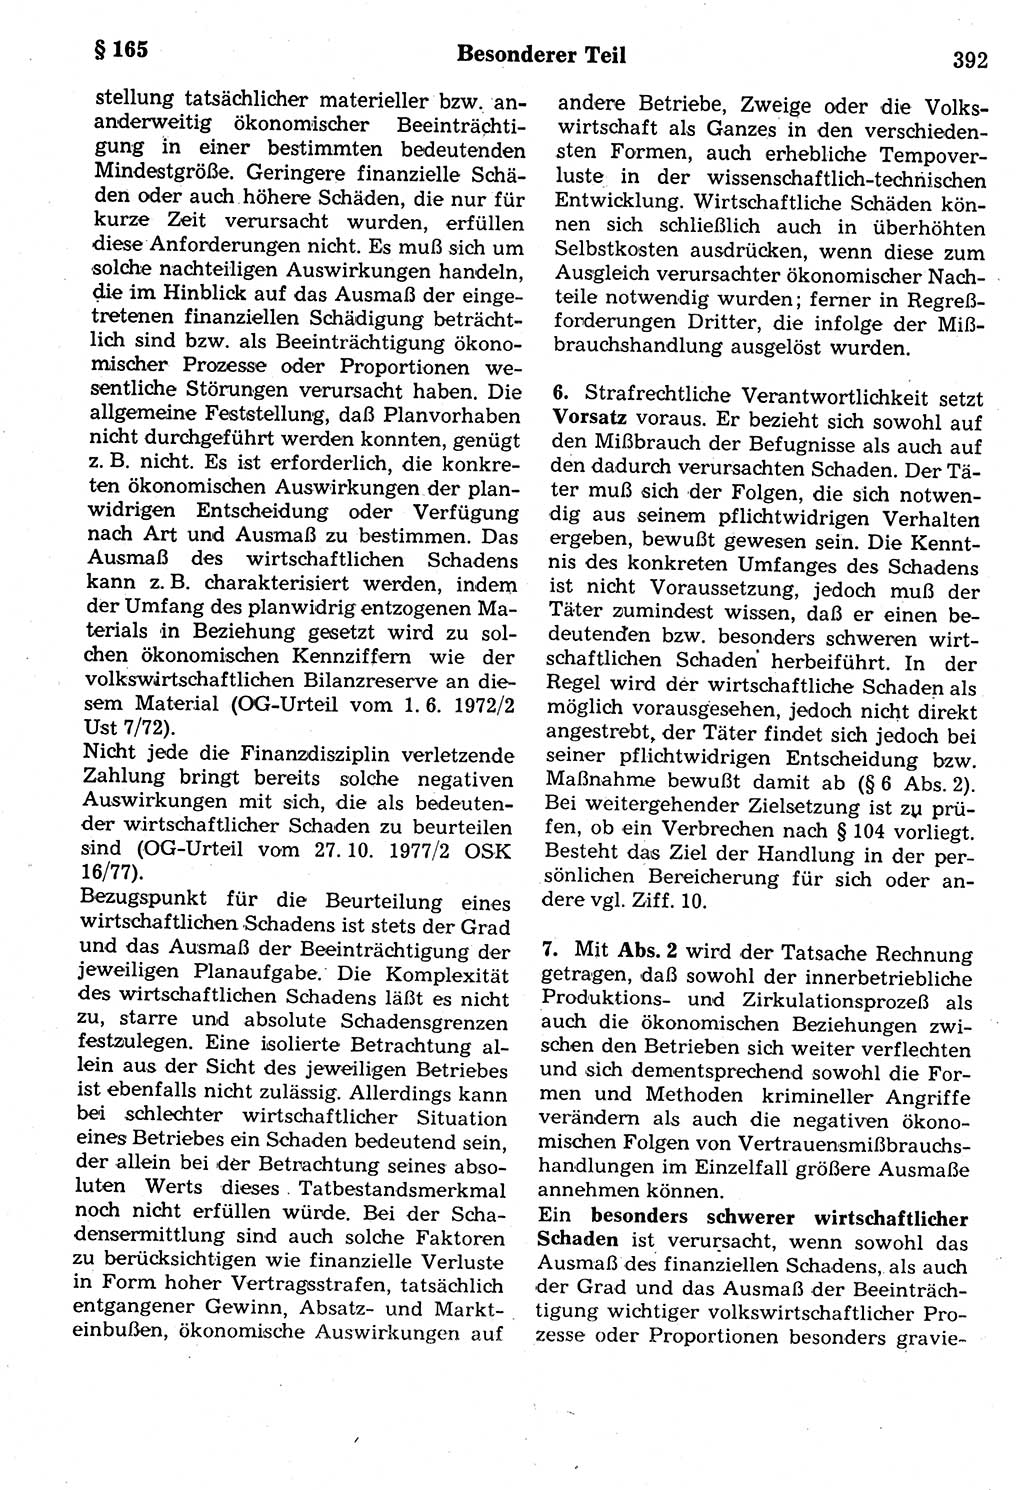 Strafrecht der Deutschen Demokratischen Republik (DDR), Kommentar zum Strafgesetzbuch (StGB) 1987, Seite 392 (Strafr. DDR Komm. StGB 1987, S. 392)